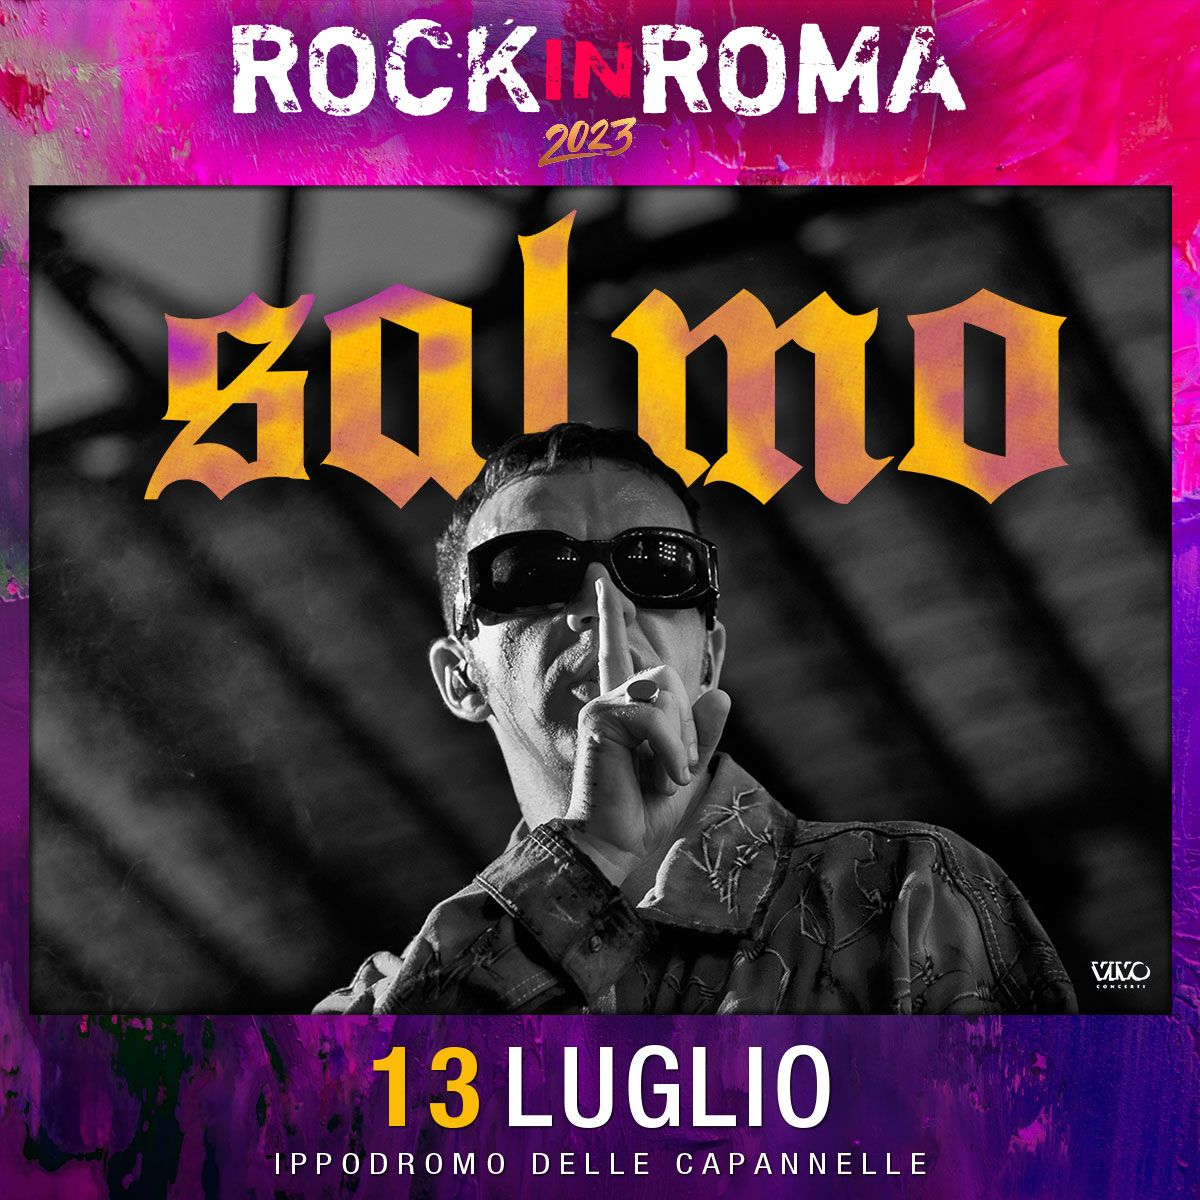 Salmo a Rock in Roma 2023: data, biglietti e come arrivare